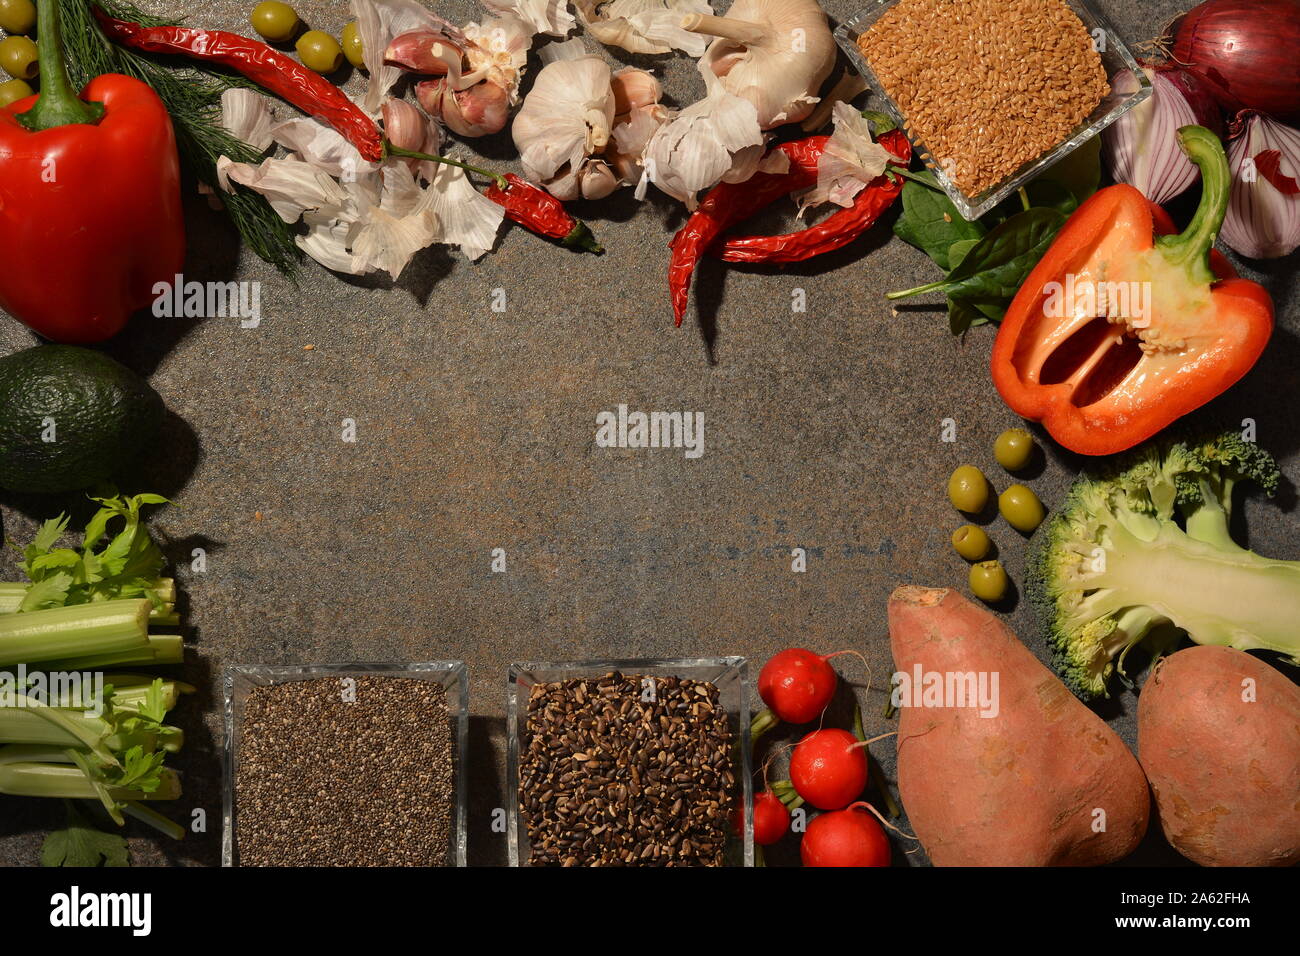 Farbenfroh und frisches Gemüse in einem Kreis angeordnet. Bild von nährstoffreichen Lebensmittel. Bestandteil der Vorbereitung der gesunde Mahlzeit. Lifestyle geeignet. Stockfoto